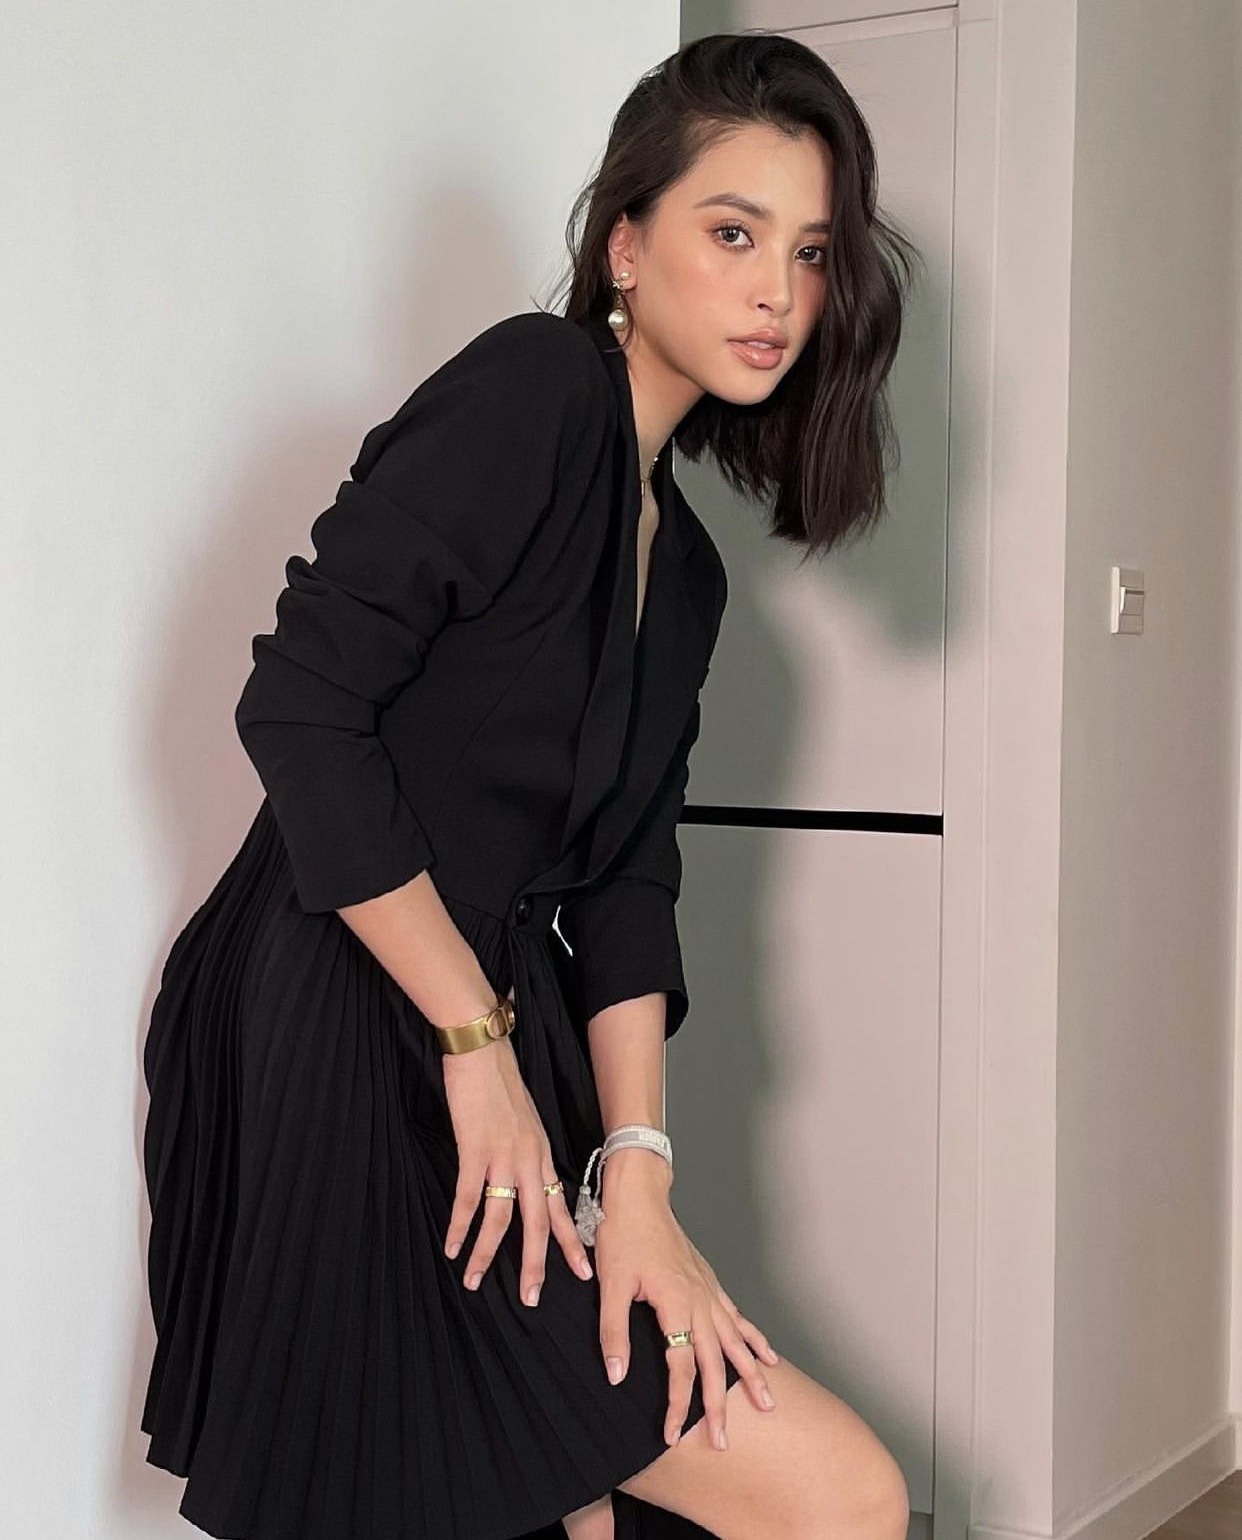 Bộ trang phục làm tăng vẻ sang chảnh, quyến rũ cho Hoa hậu Việt Nam 2018